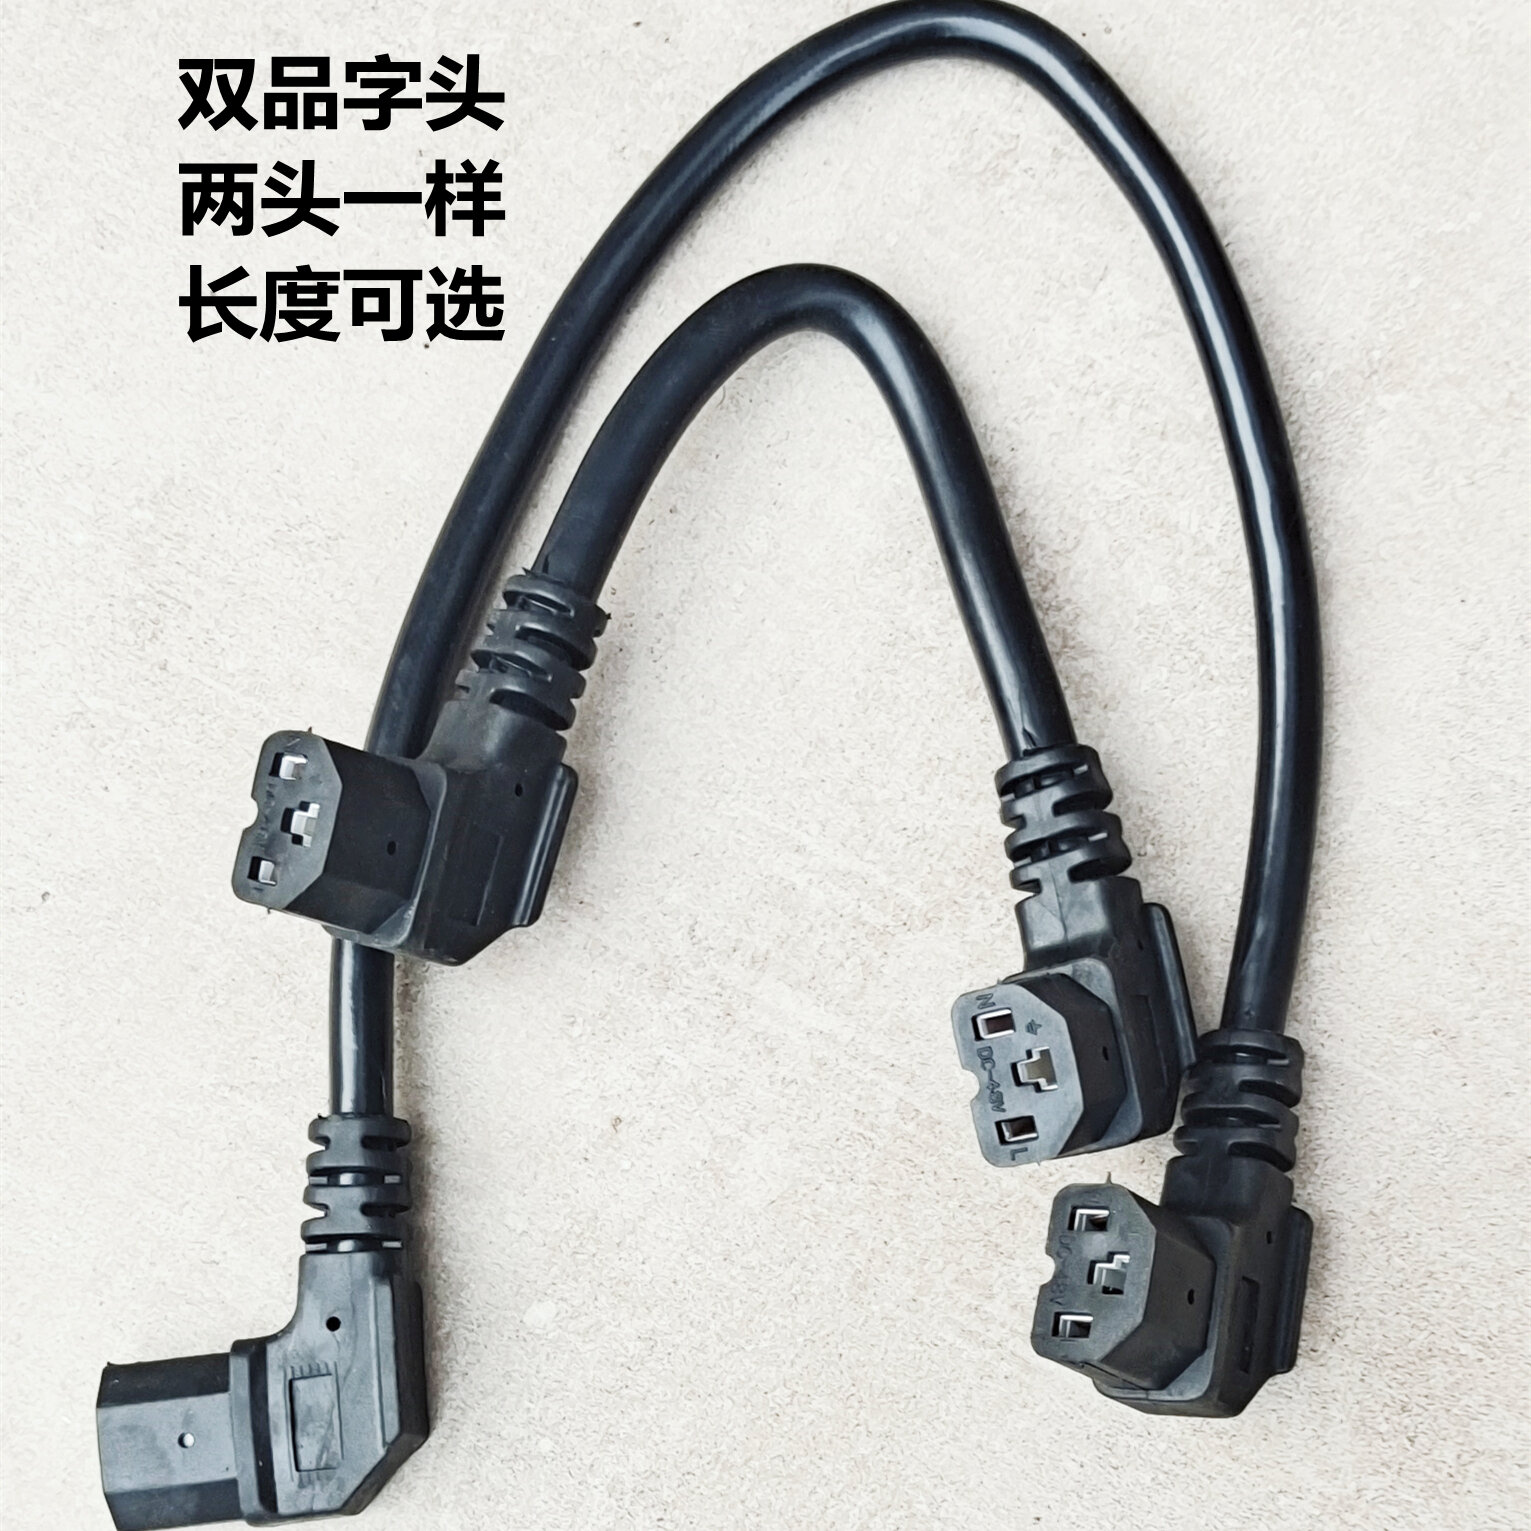 Xe Điện Đôi Đầu Âm Dây Nối Hai Đầu Jack USB Đực Hai Sản Phẩm Đầu Đầu Chuyển Đổi Dây Kéo Dài Hai Đầu Âm Dây Nối Đôi Khuỷu Tay Dây Nối